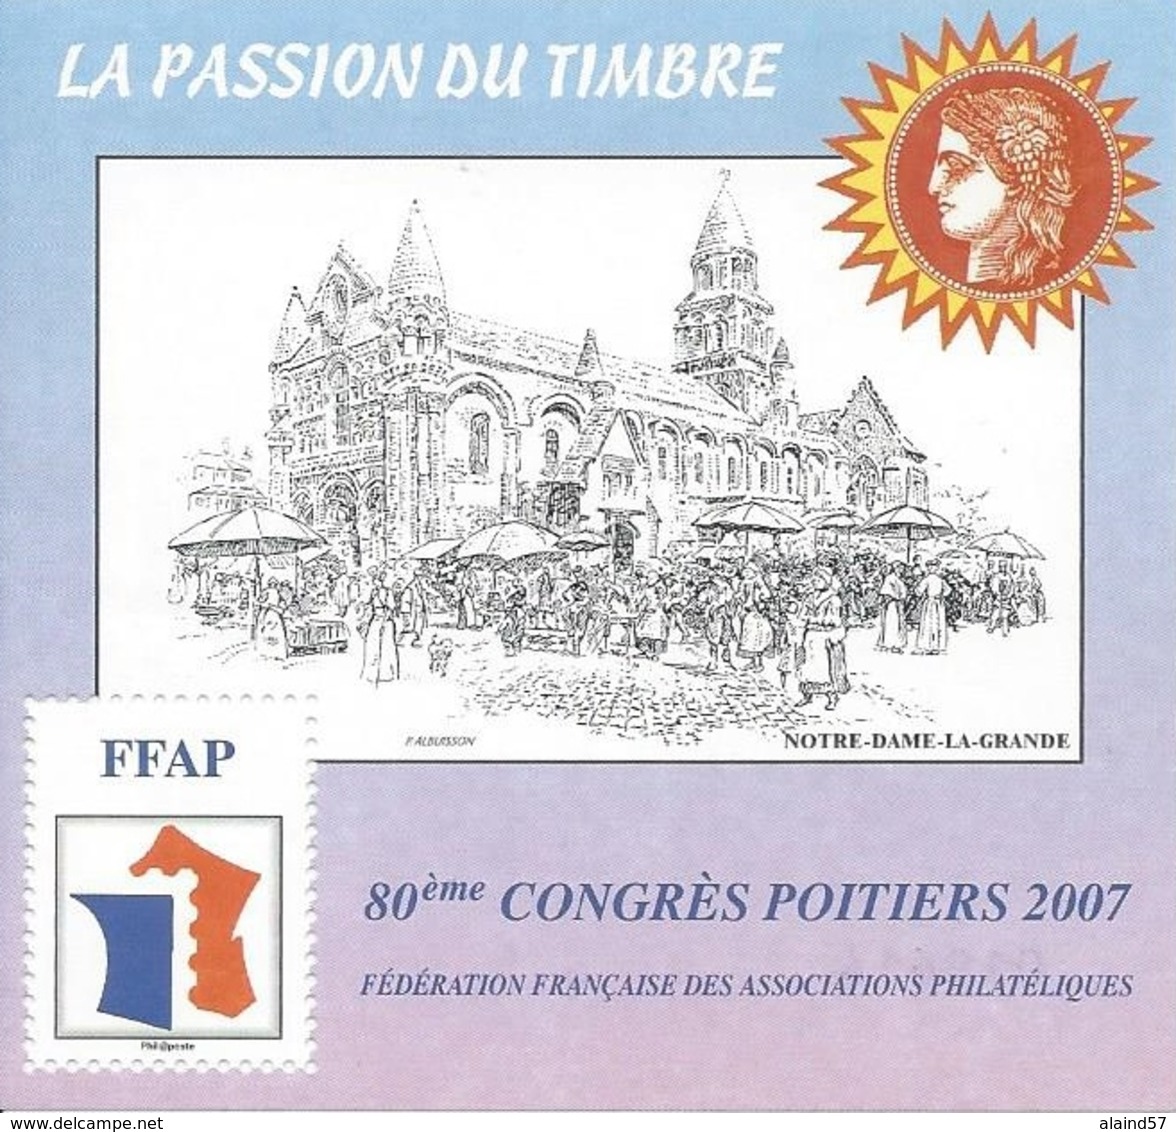 Bloc FFAP N°1 80ème Congrès Poitiers 2007 - FFAP